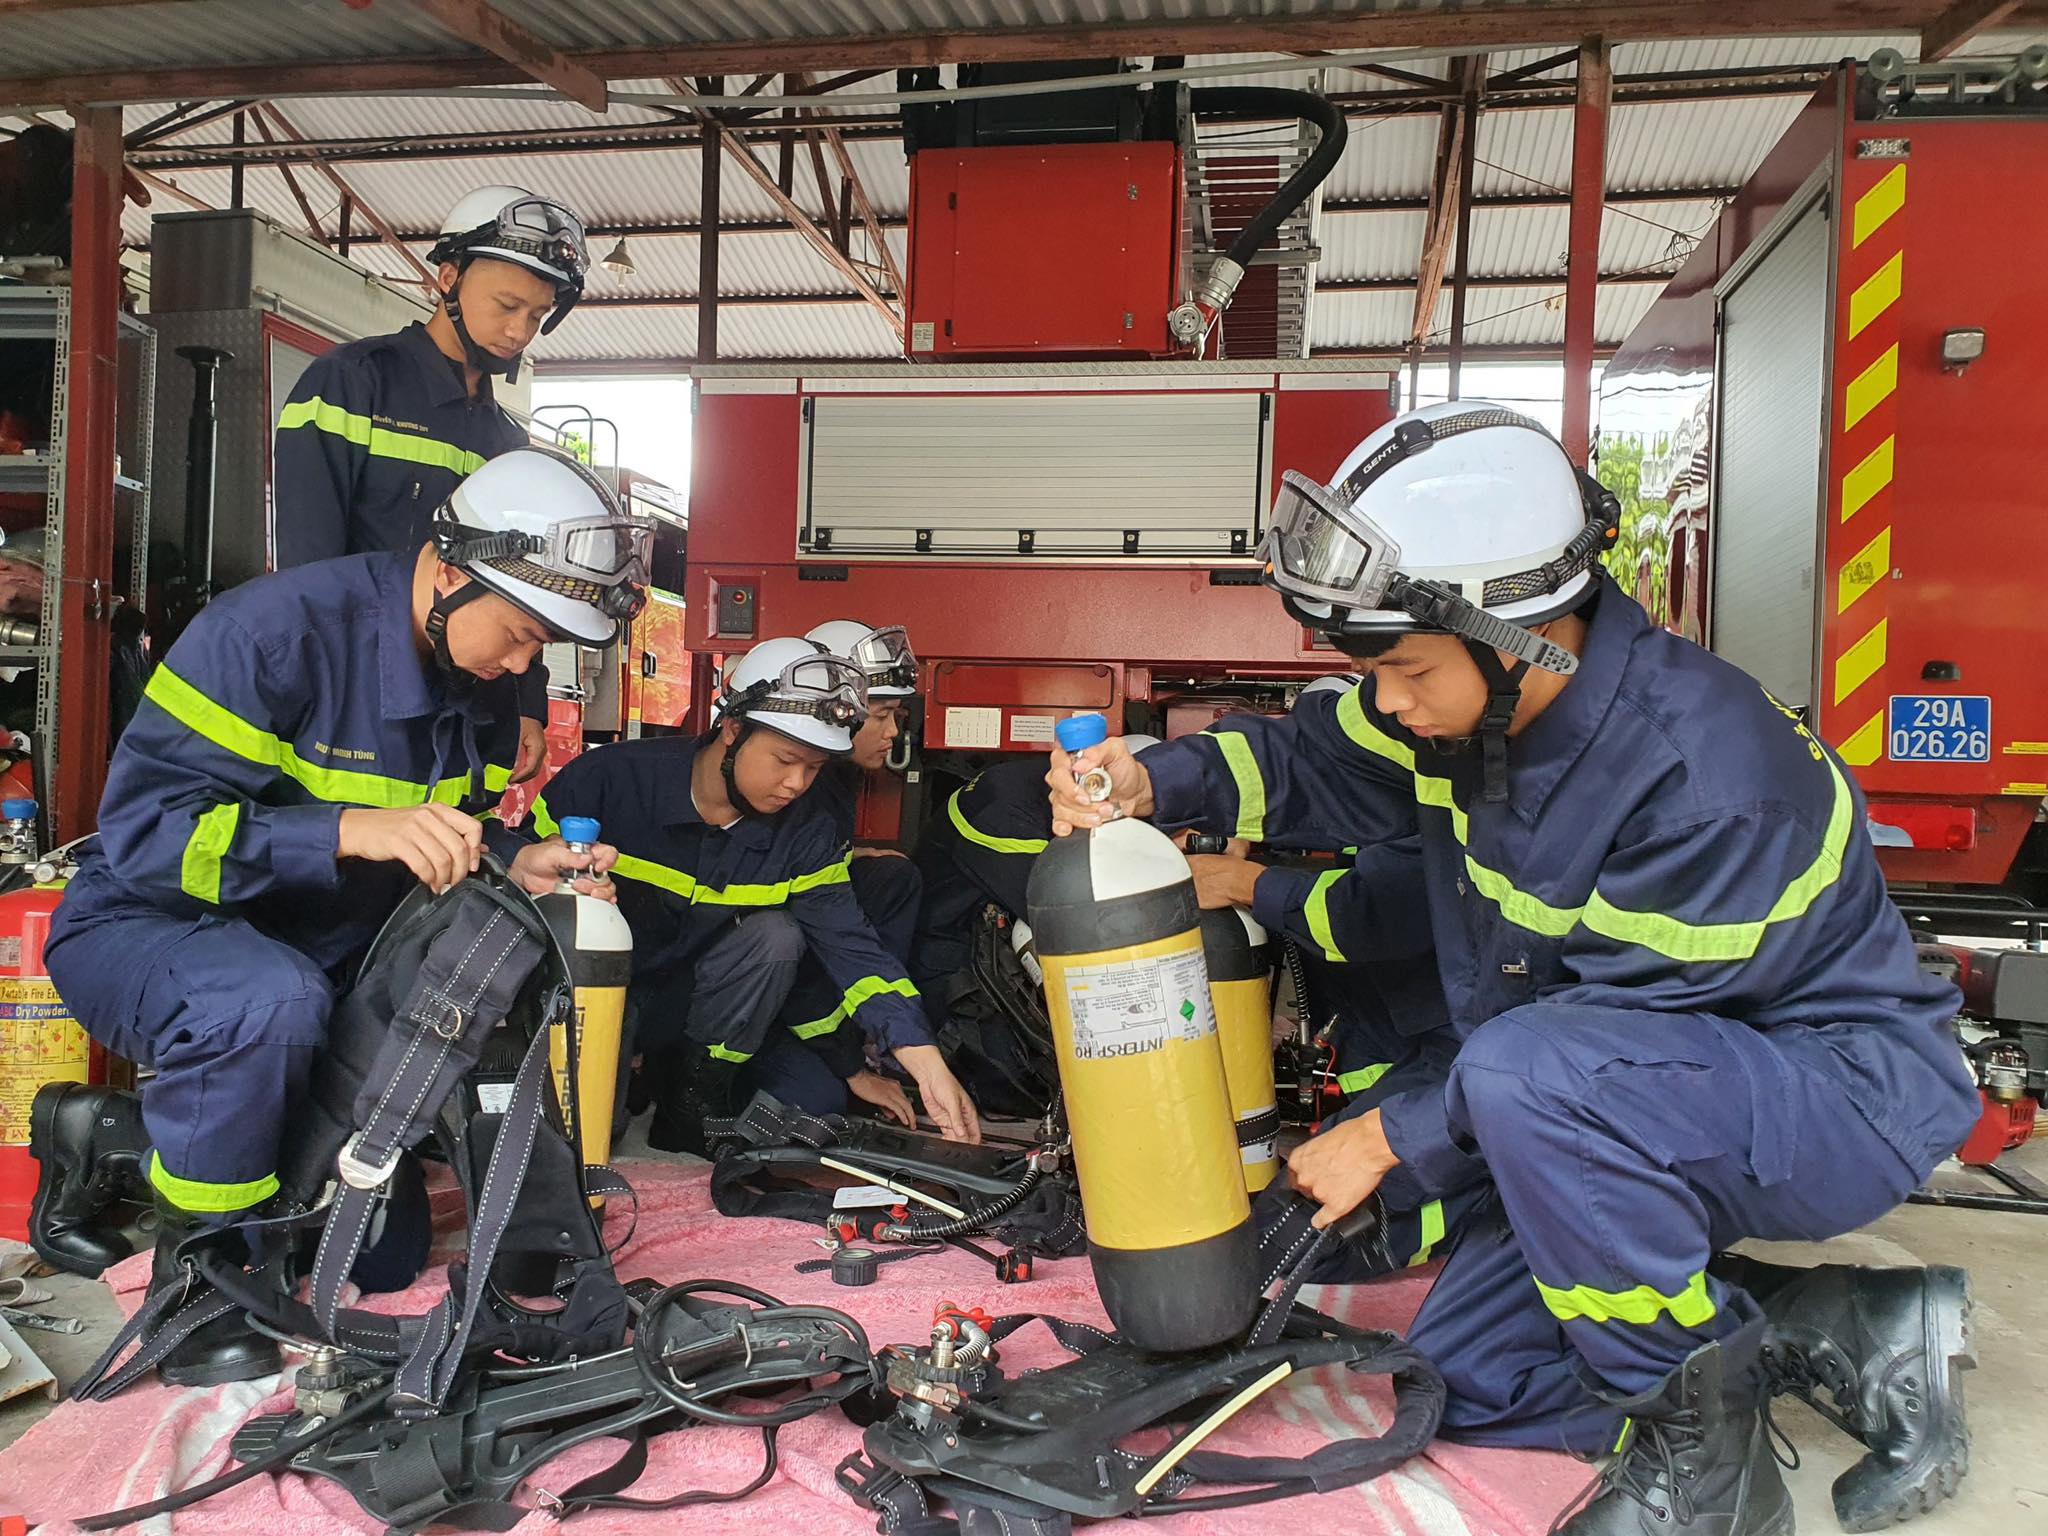 Đội PCCC và cứu nạn cứu hộ Công an quận Nam Từ Liêm tất bật với công việc, sắp xếp dụng cụ chữa cháy